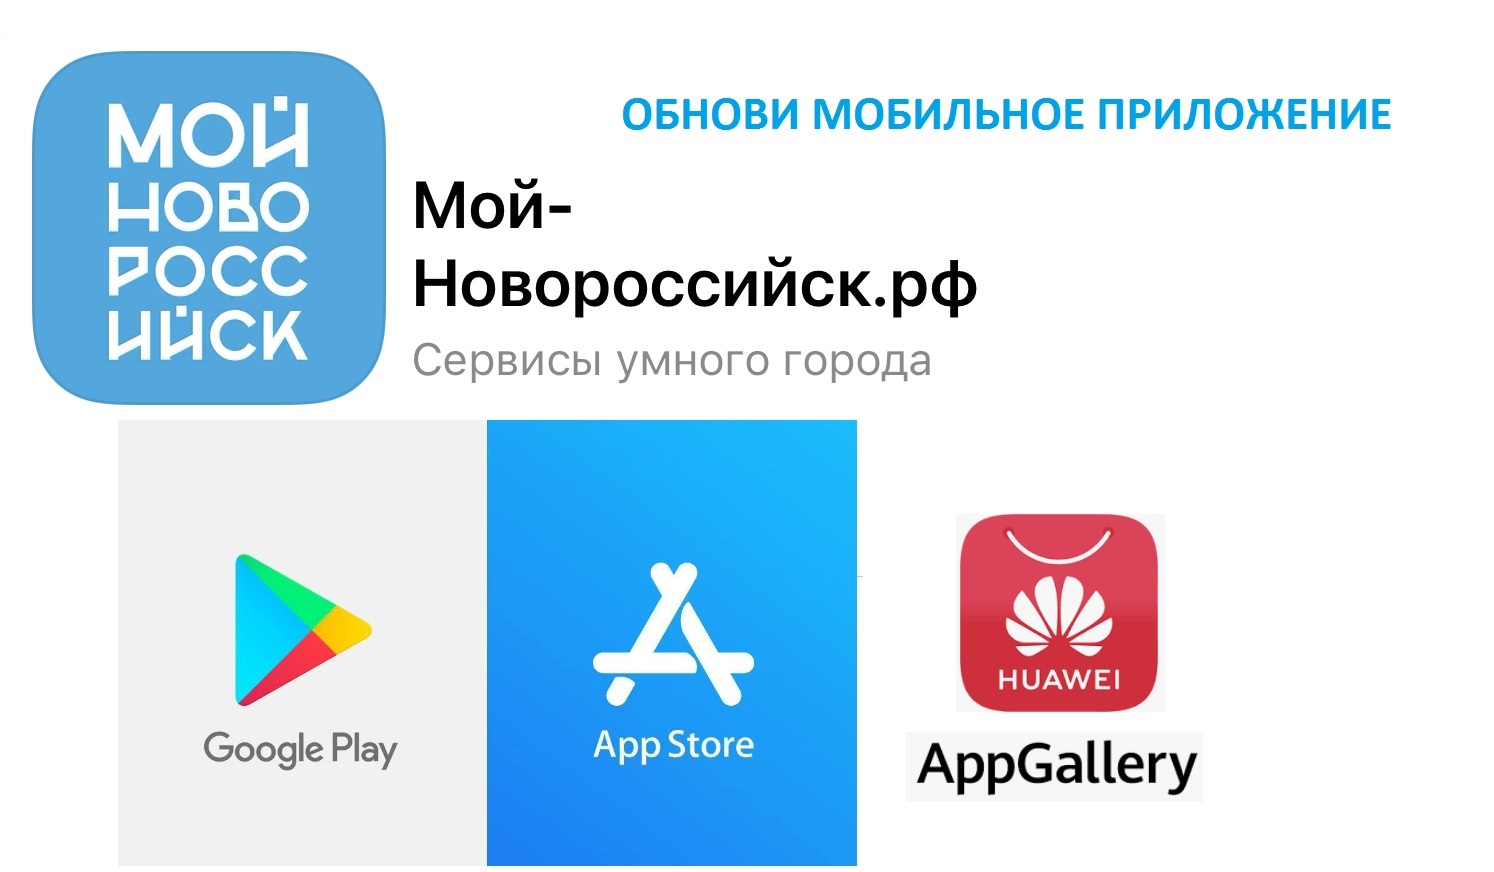 Мой новороссийск рф регистрация. App Store отключат в России. Мой спорт приложение. Обновляй Мои приложения.